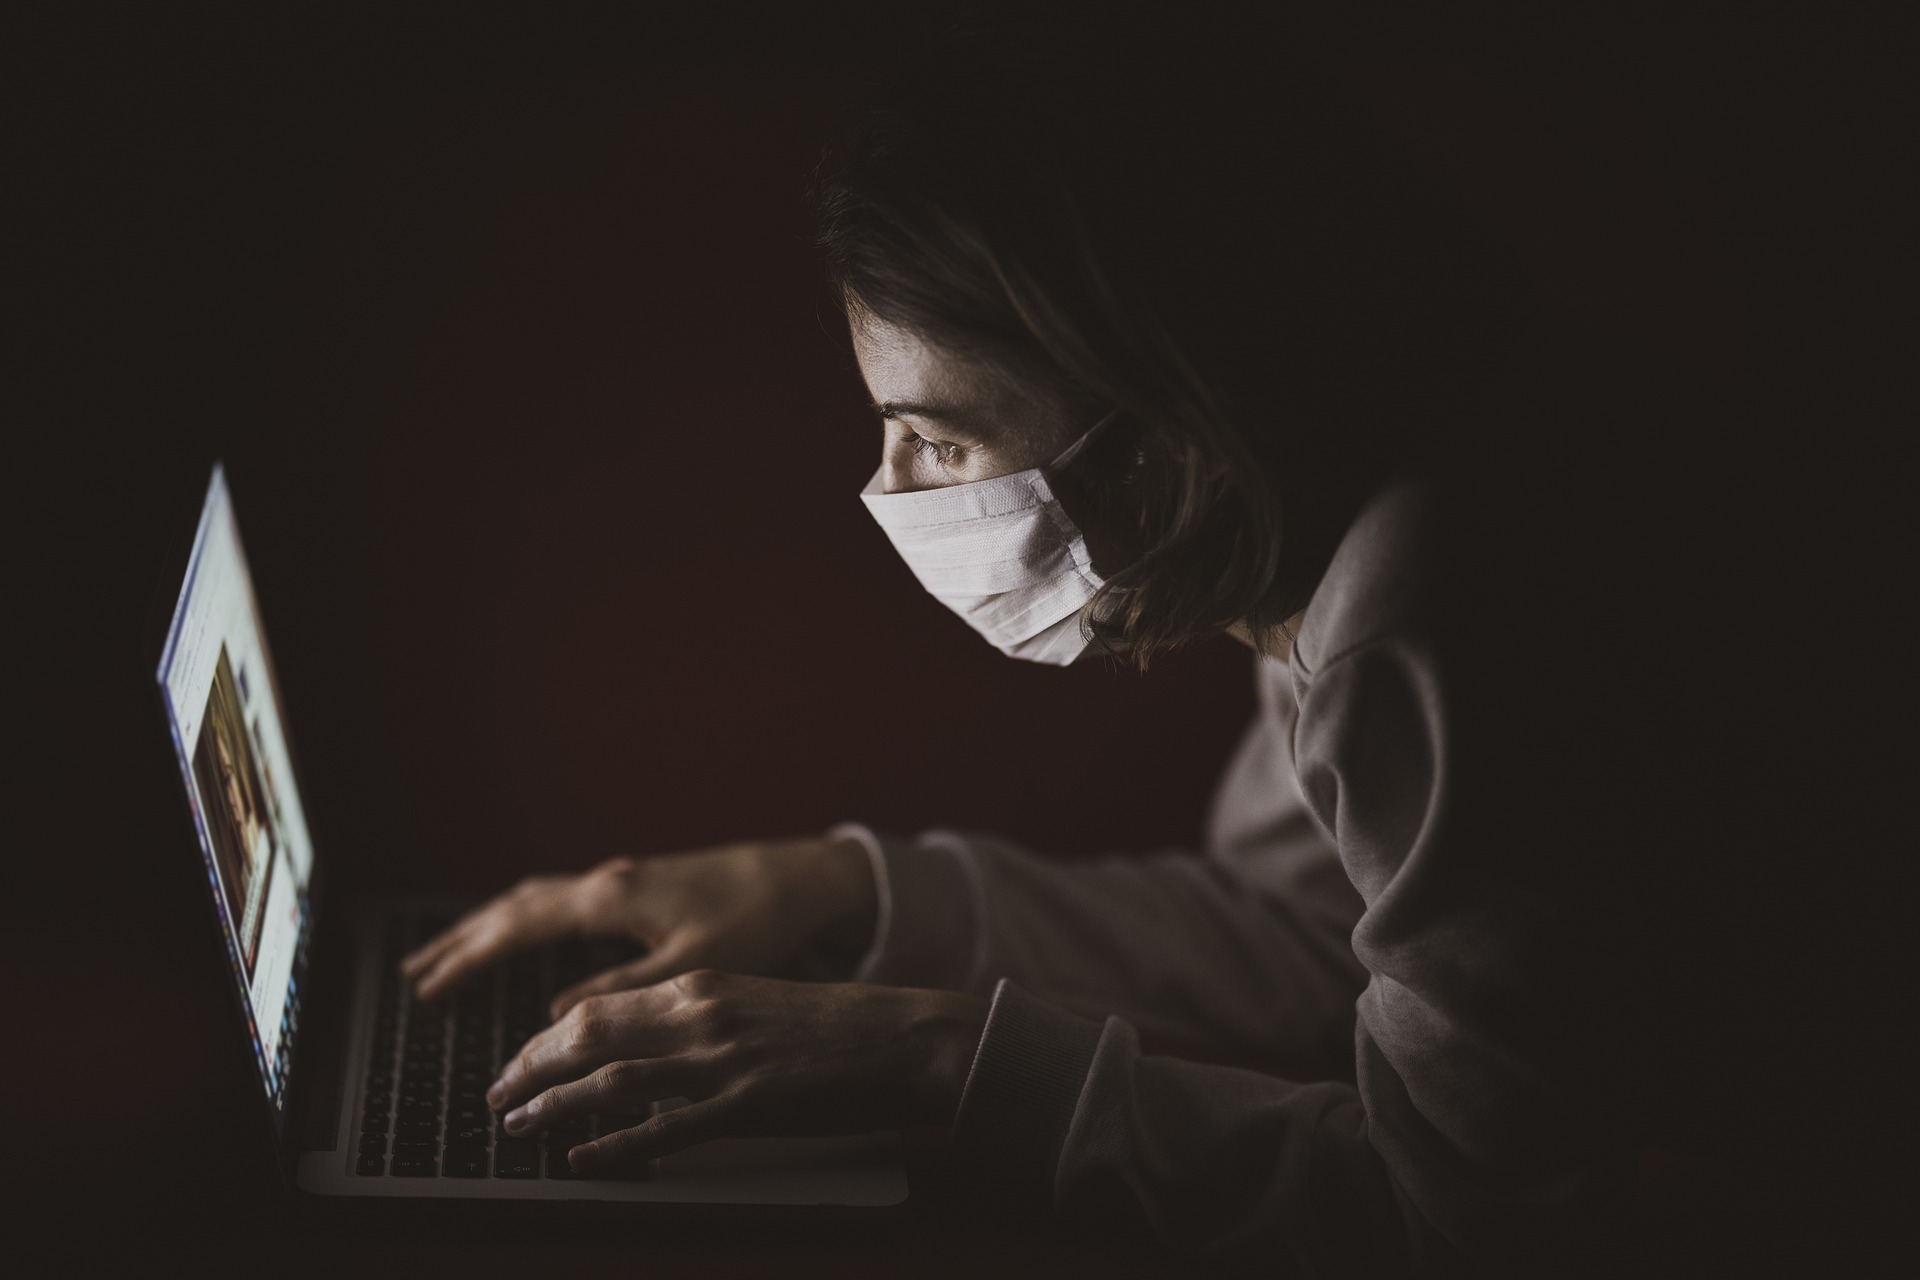 暗闇でパソコンを操作している人の写真